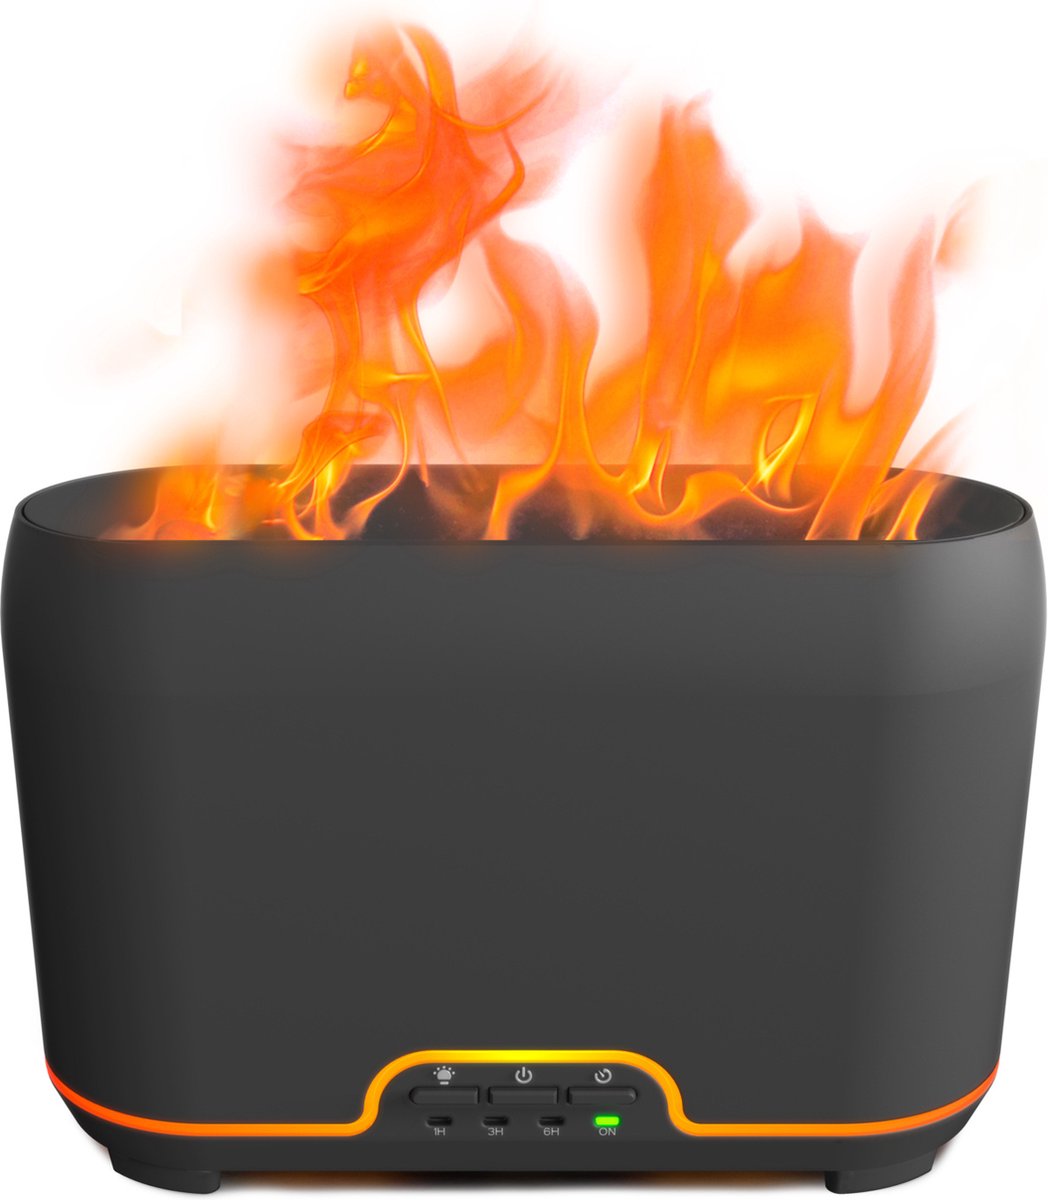 Calex Smart Aroma Diffuser met Flame functie - 12 Watt - 5 Jaar Garantie